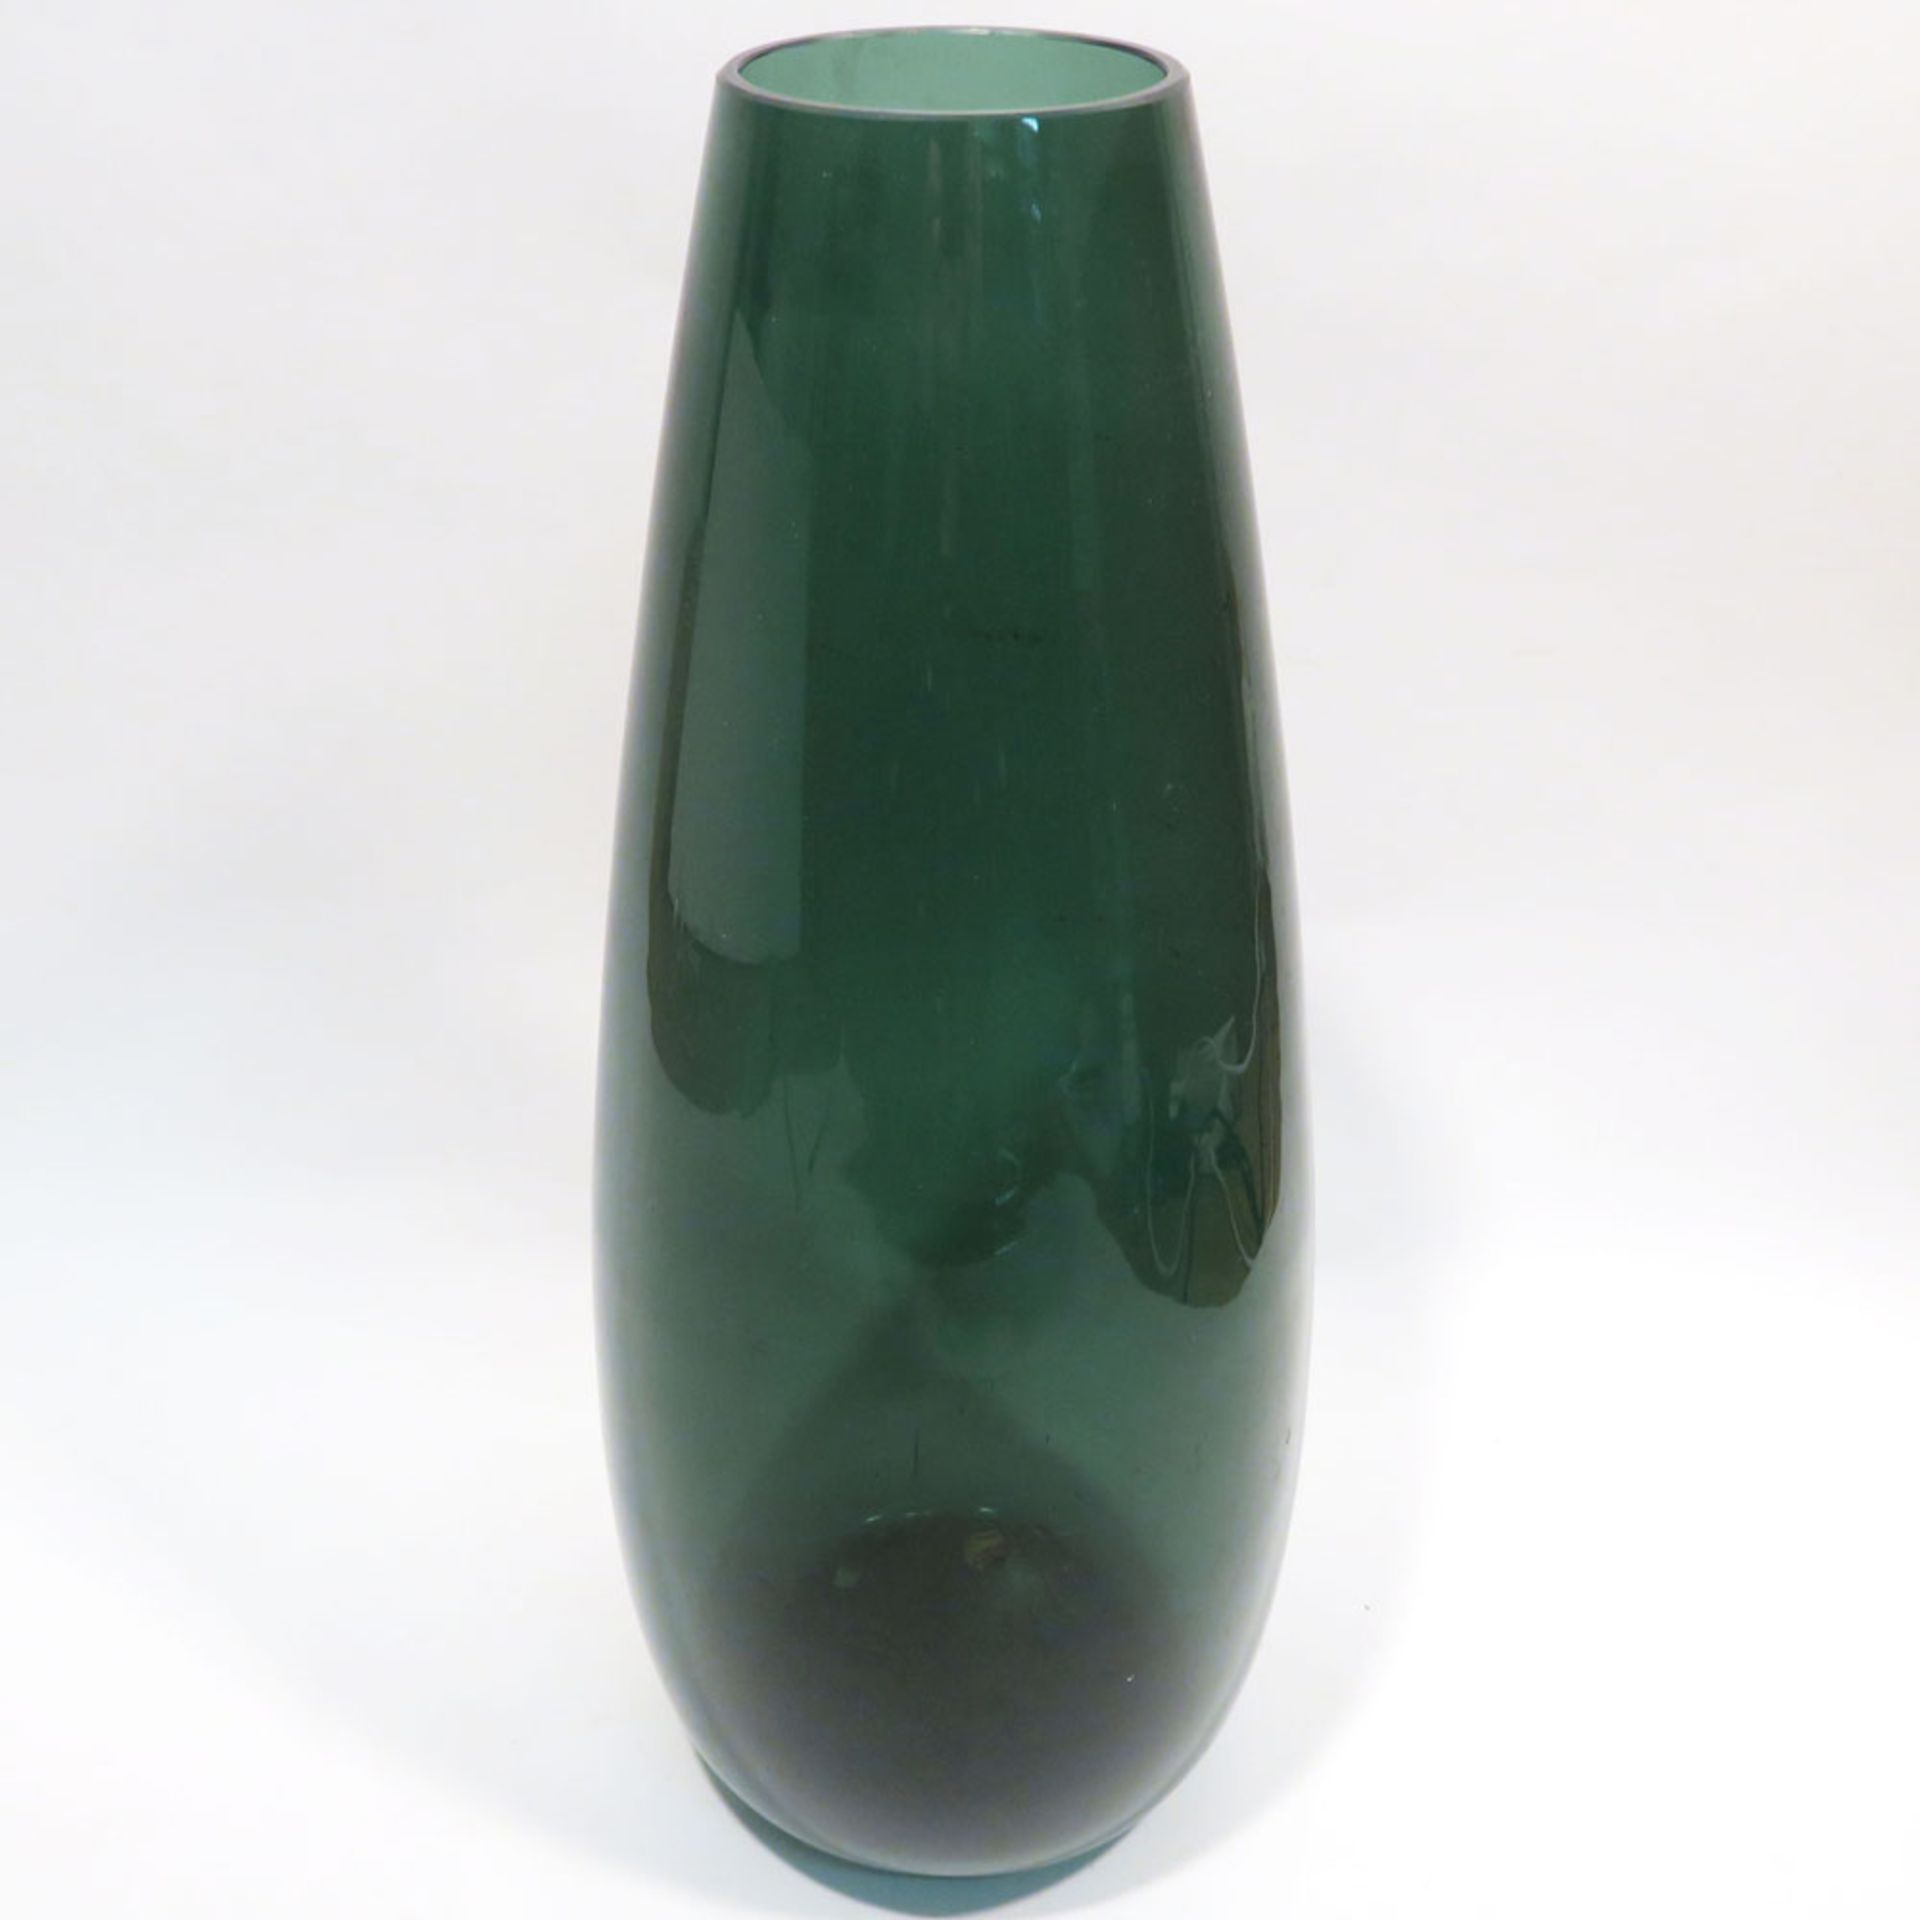 VaseEntwurf eventuell Wilhelm Wagenfeld. Grünes Glas. Rand abgeschliffen. H. 47 cm. - Image 2 of 2